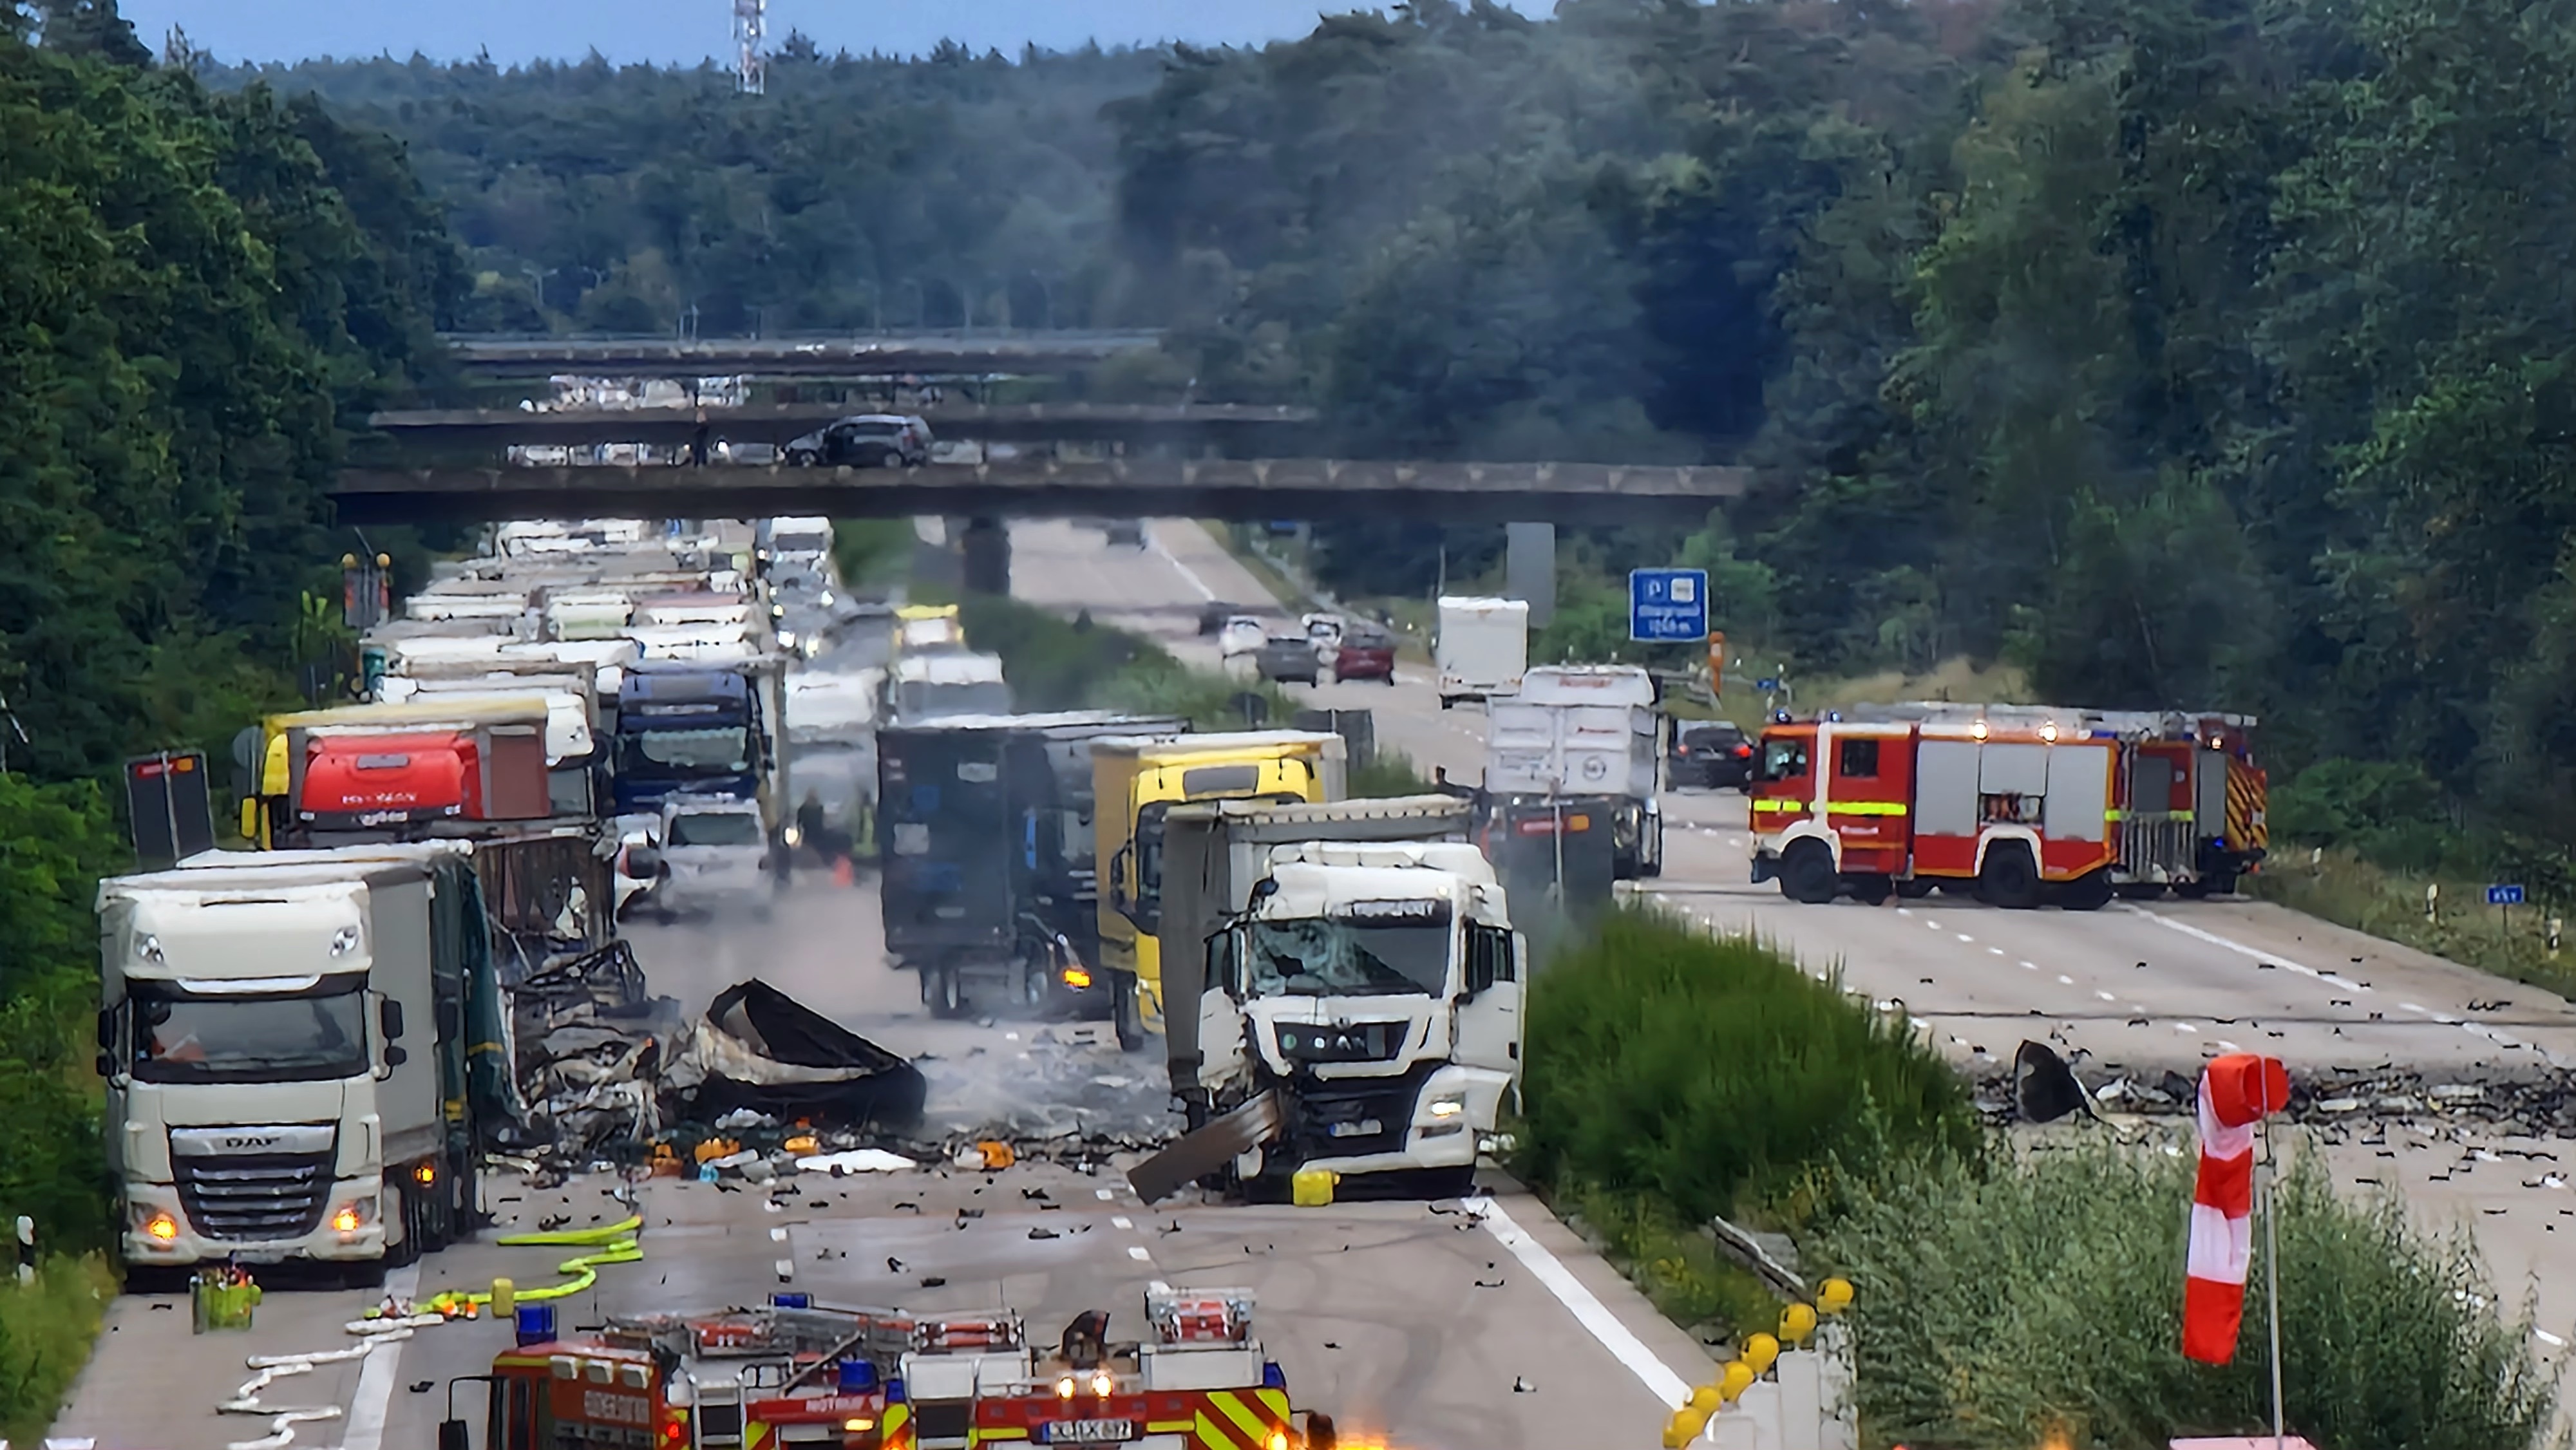 Geslau: Unfall mit Krankenwagen in Bayern – drei Tote nach  Frontalzusammenstoß